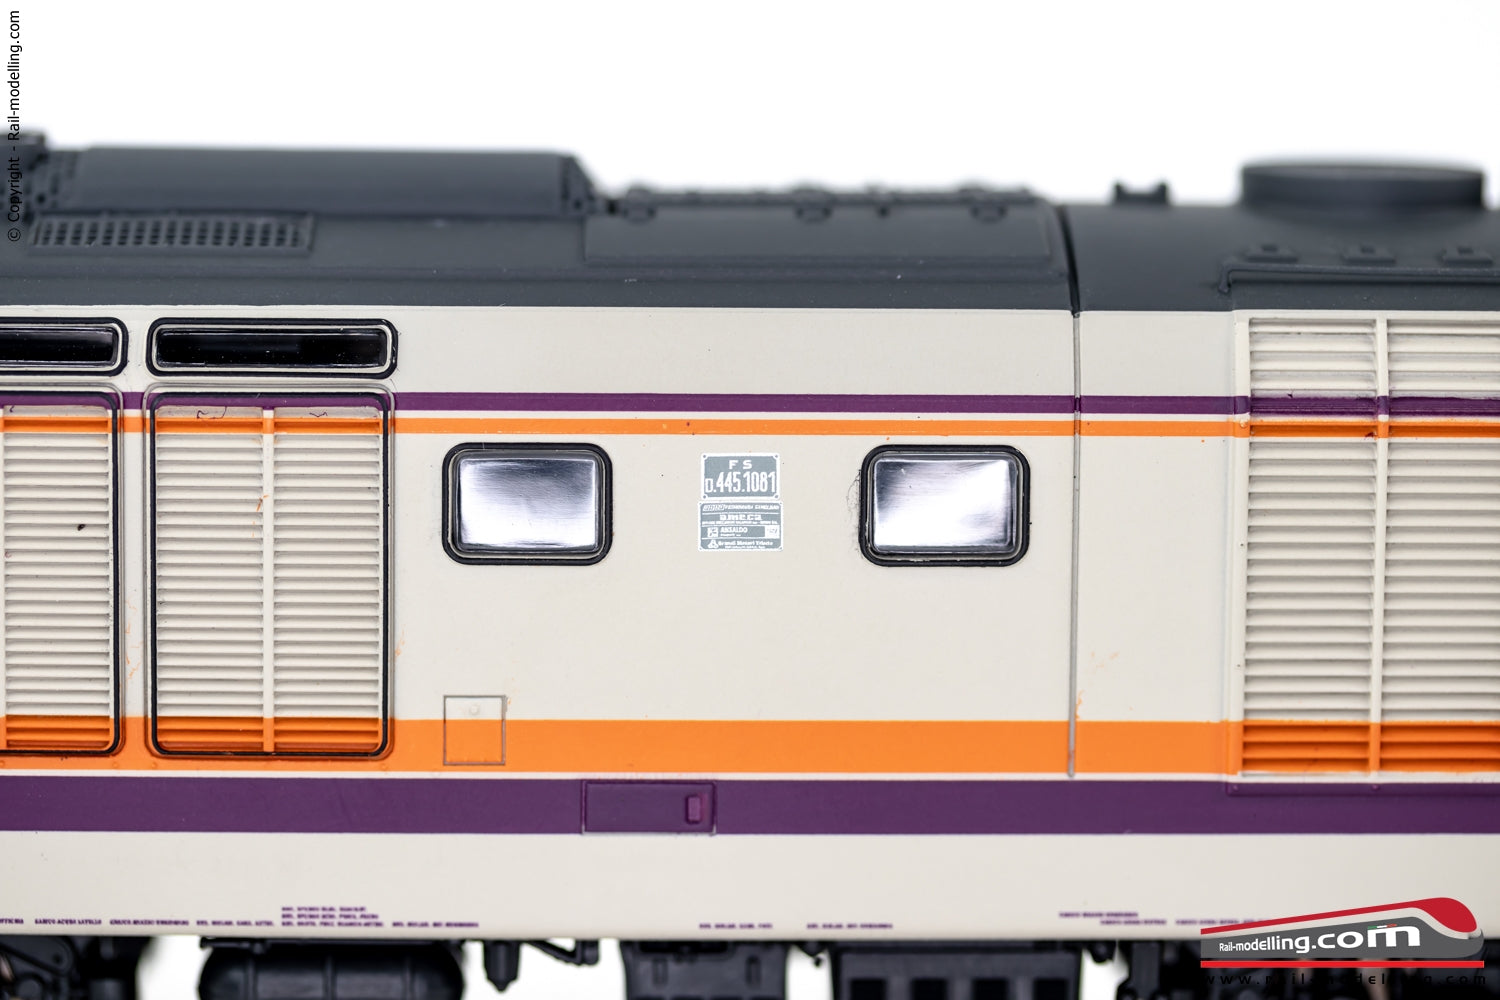 LIMA EXPERT HL2651 - H0 187 - Locomotiva diesel FS D.445 3a serie livrea MDVC Dep. Cremona Ep. V